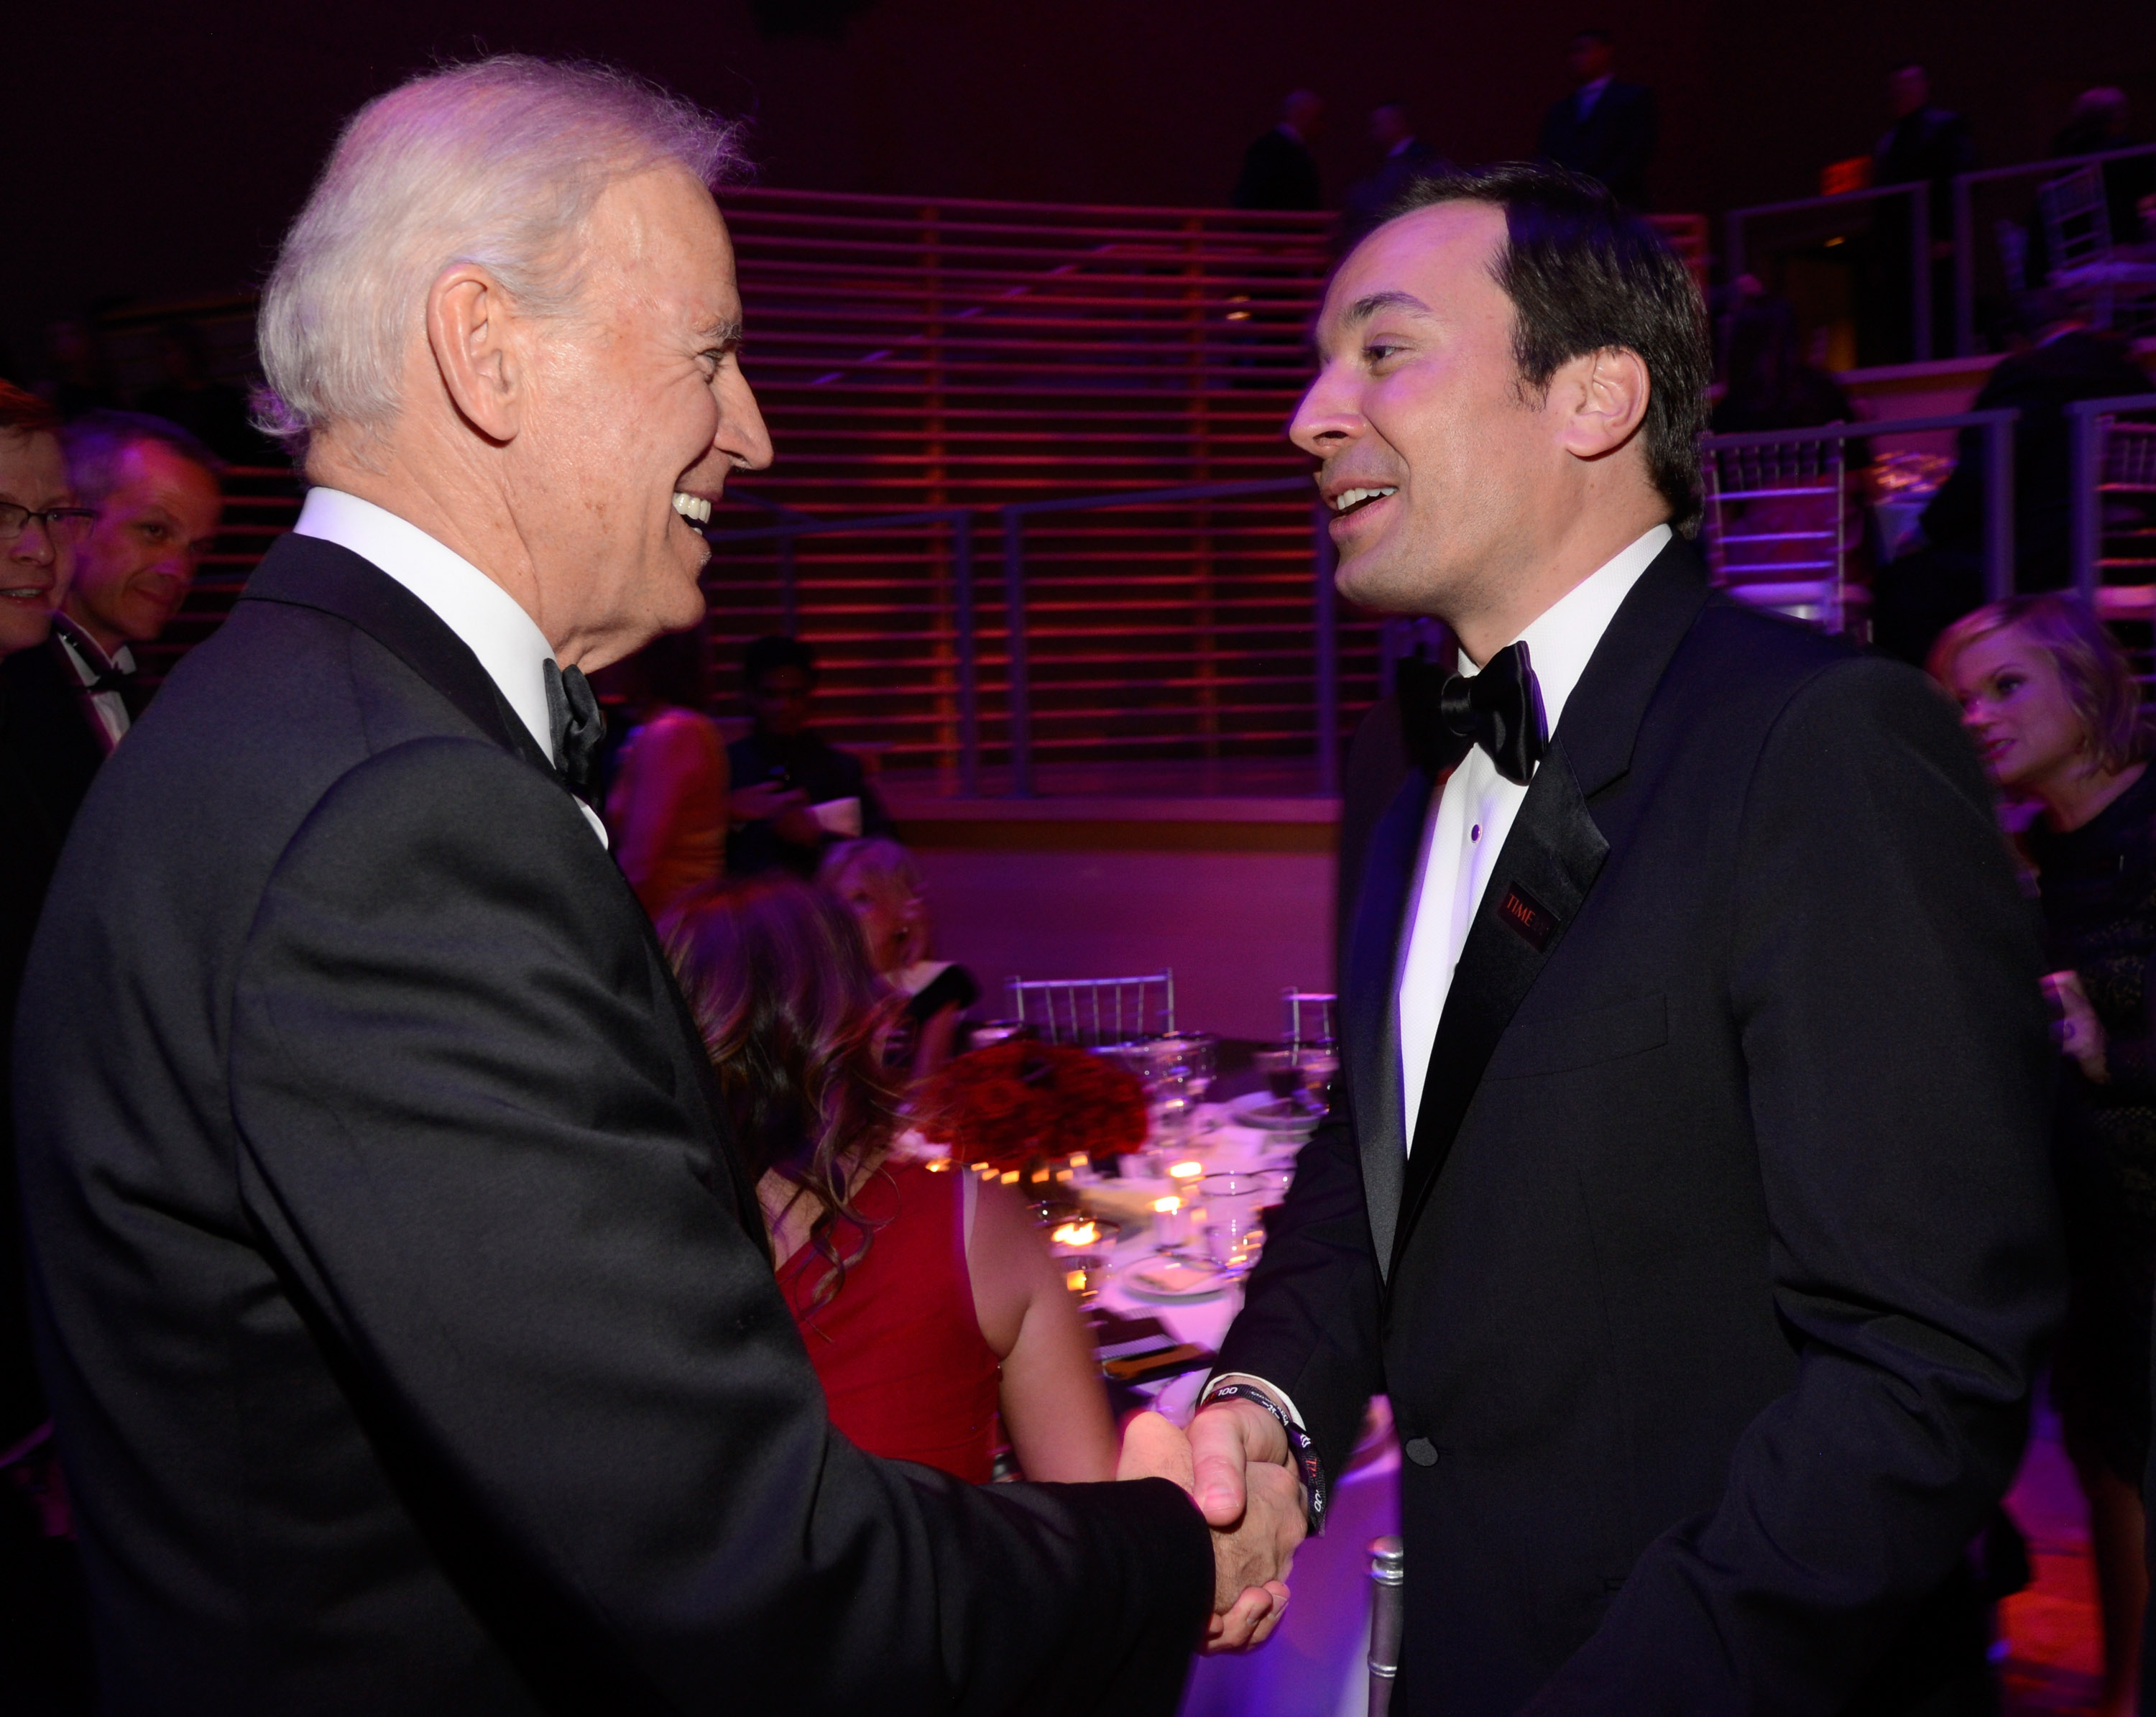 Joe Biden and Jimmy Fallon